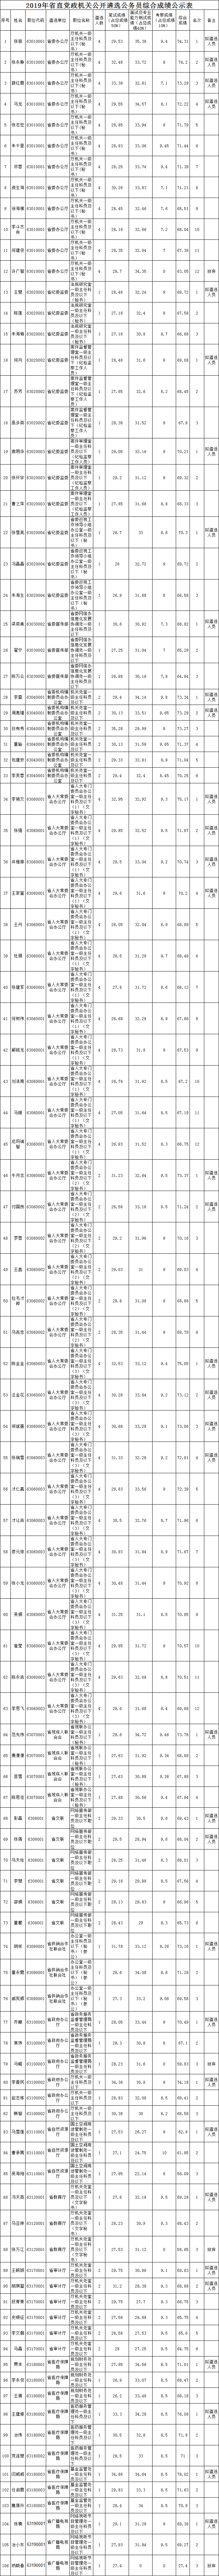 2019年省直党政机关公开遴选公务员综合成绩公示表.png